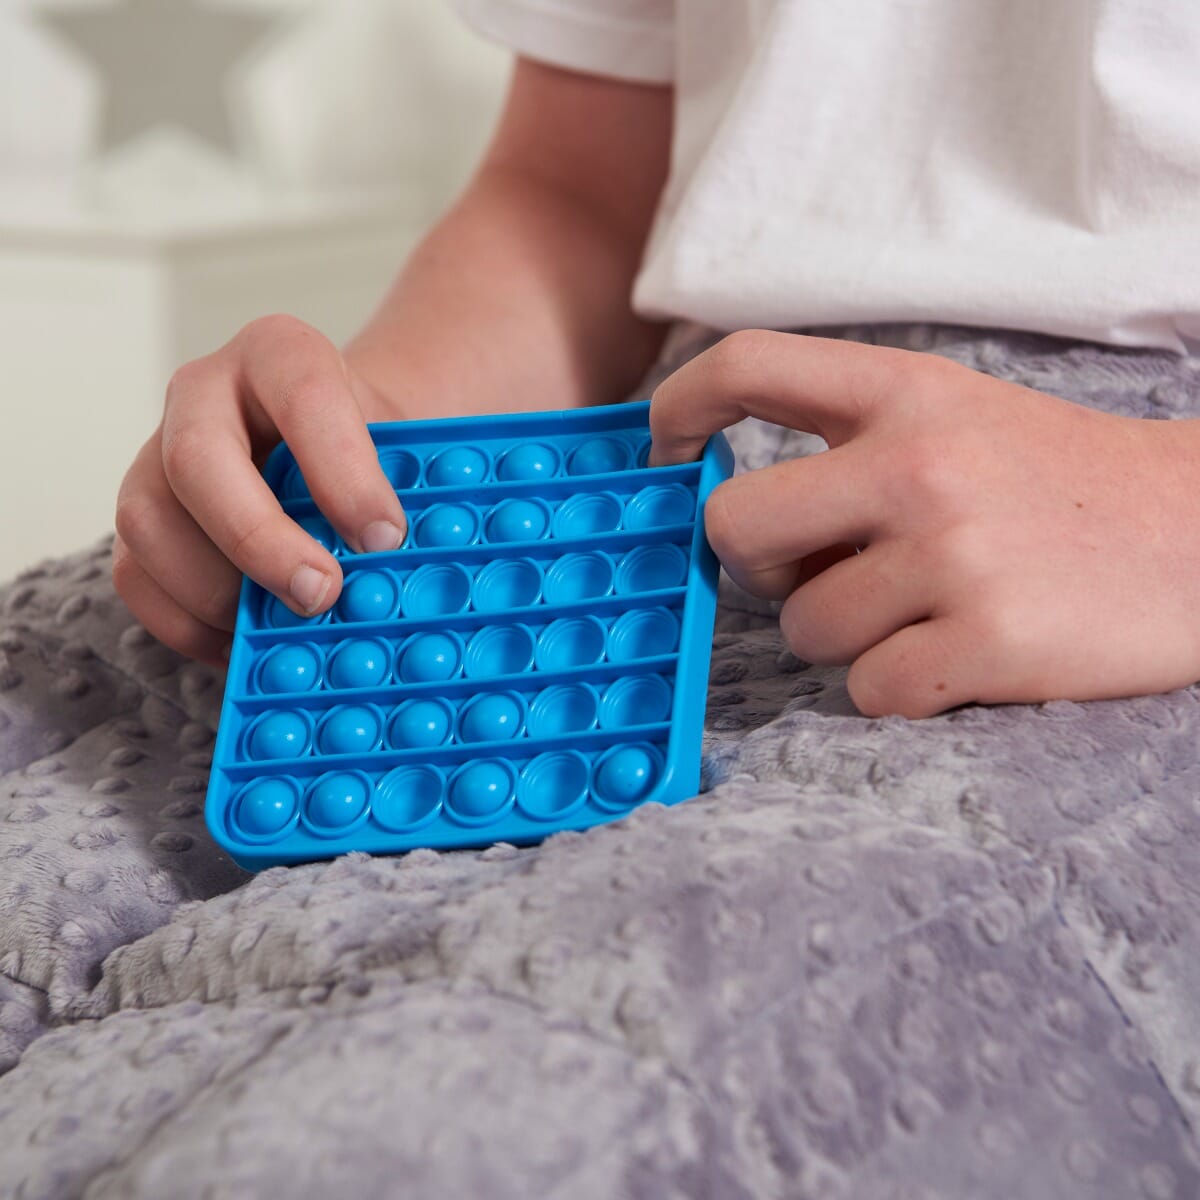 Push It Bubble Fidget Toys Pop Its Square Sensory Stress Relief Kids School Toy 